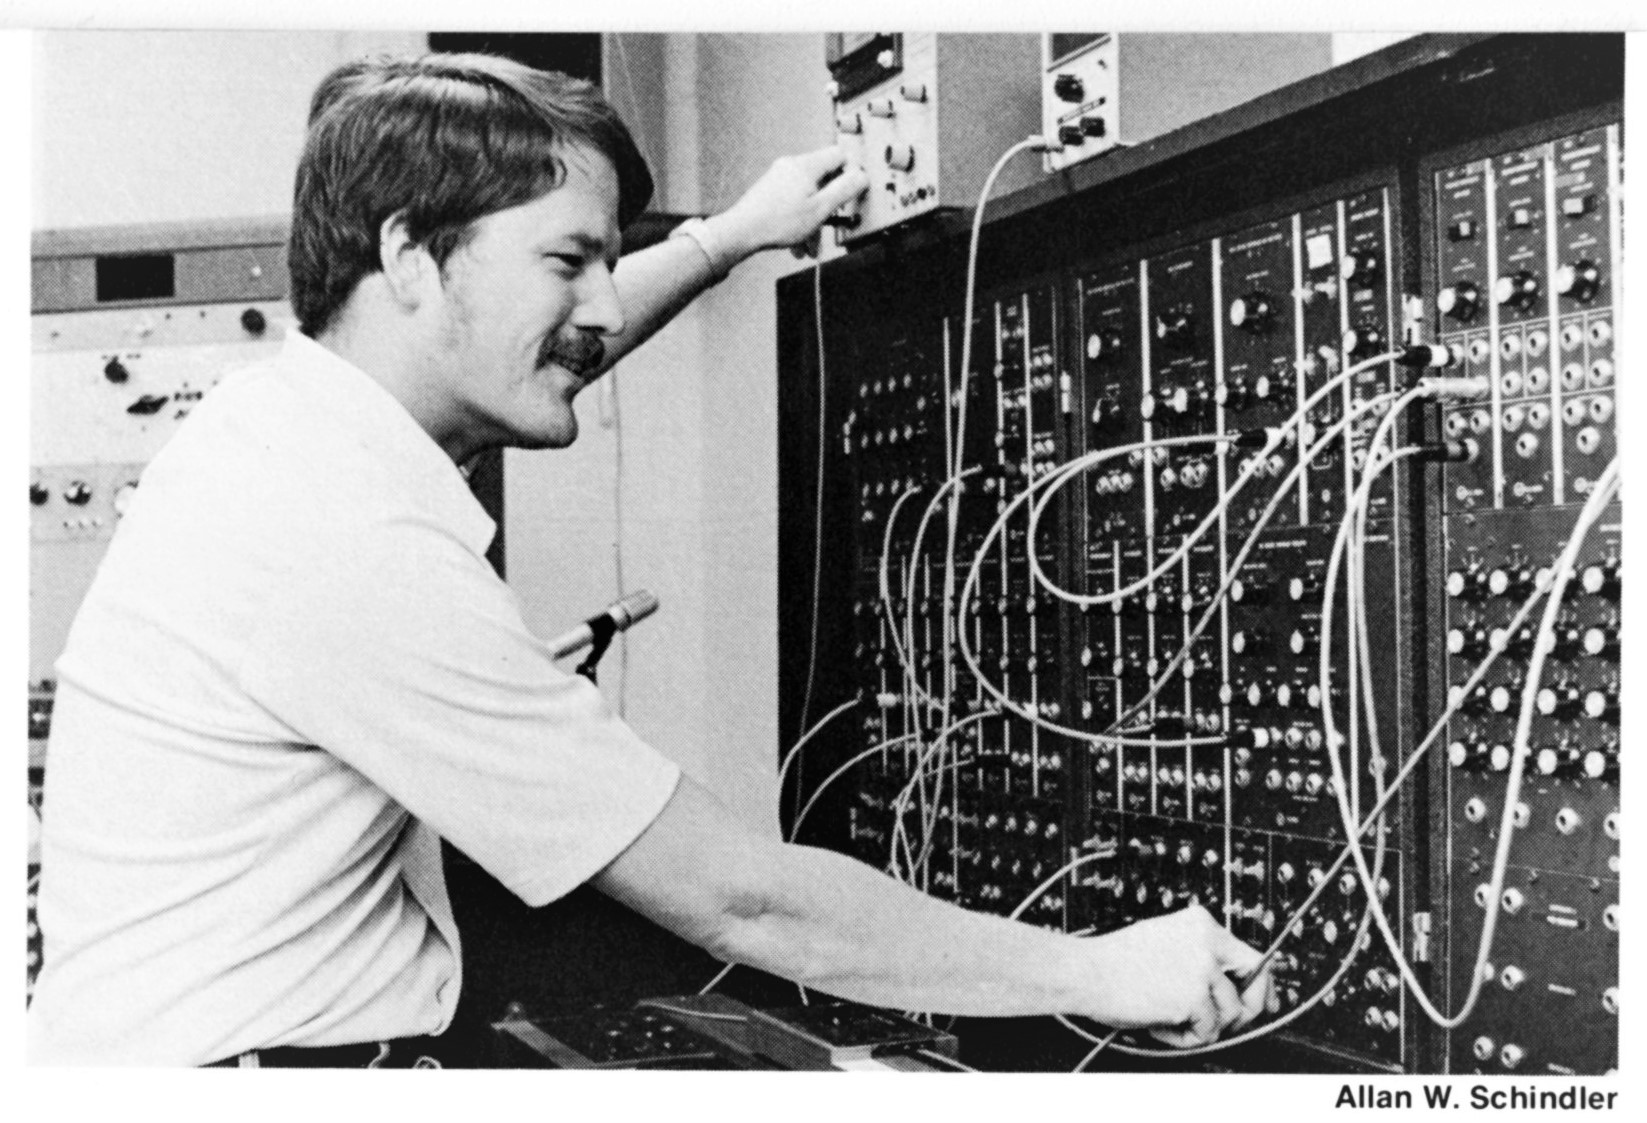 Allan Schindler at ECMC interface modules (1981)